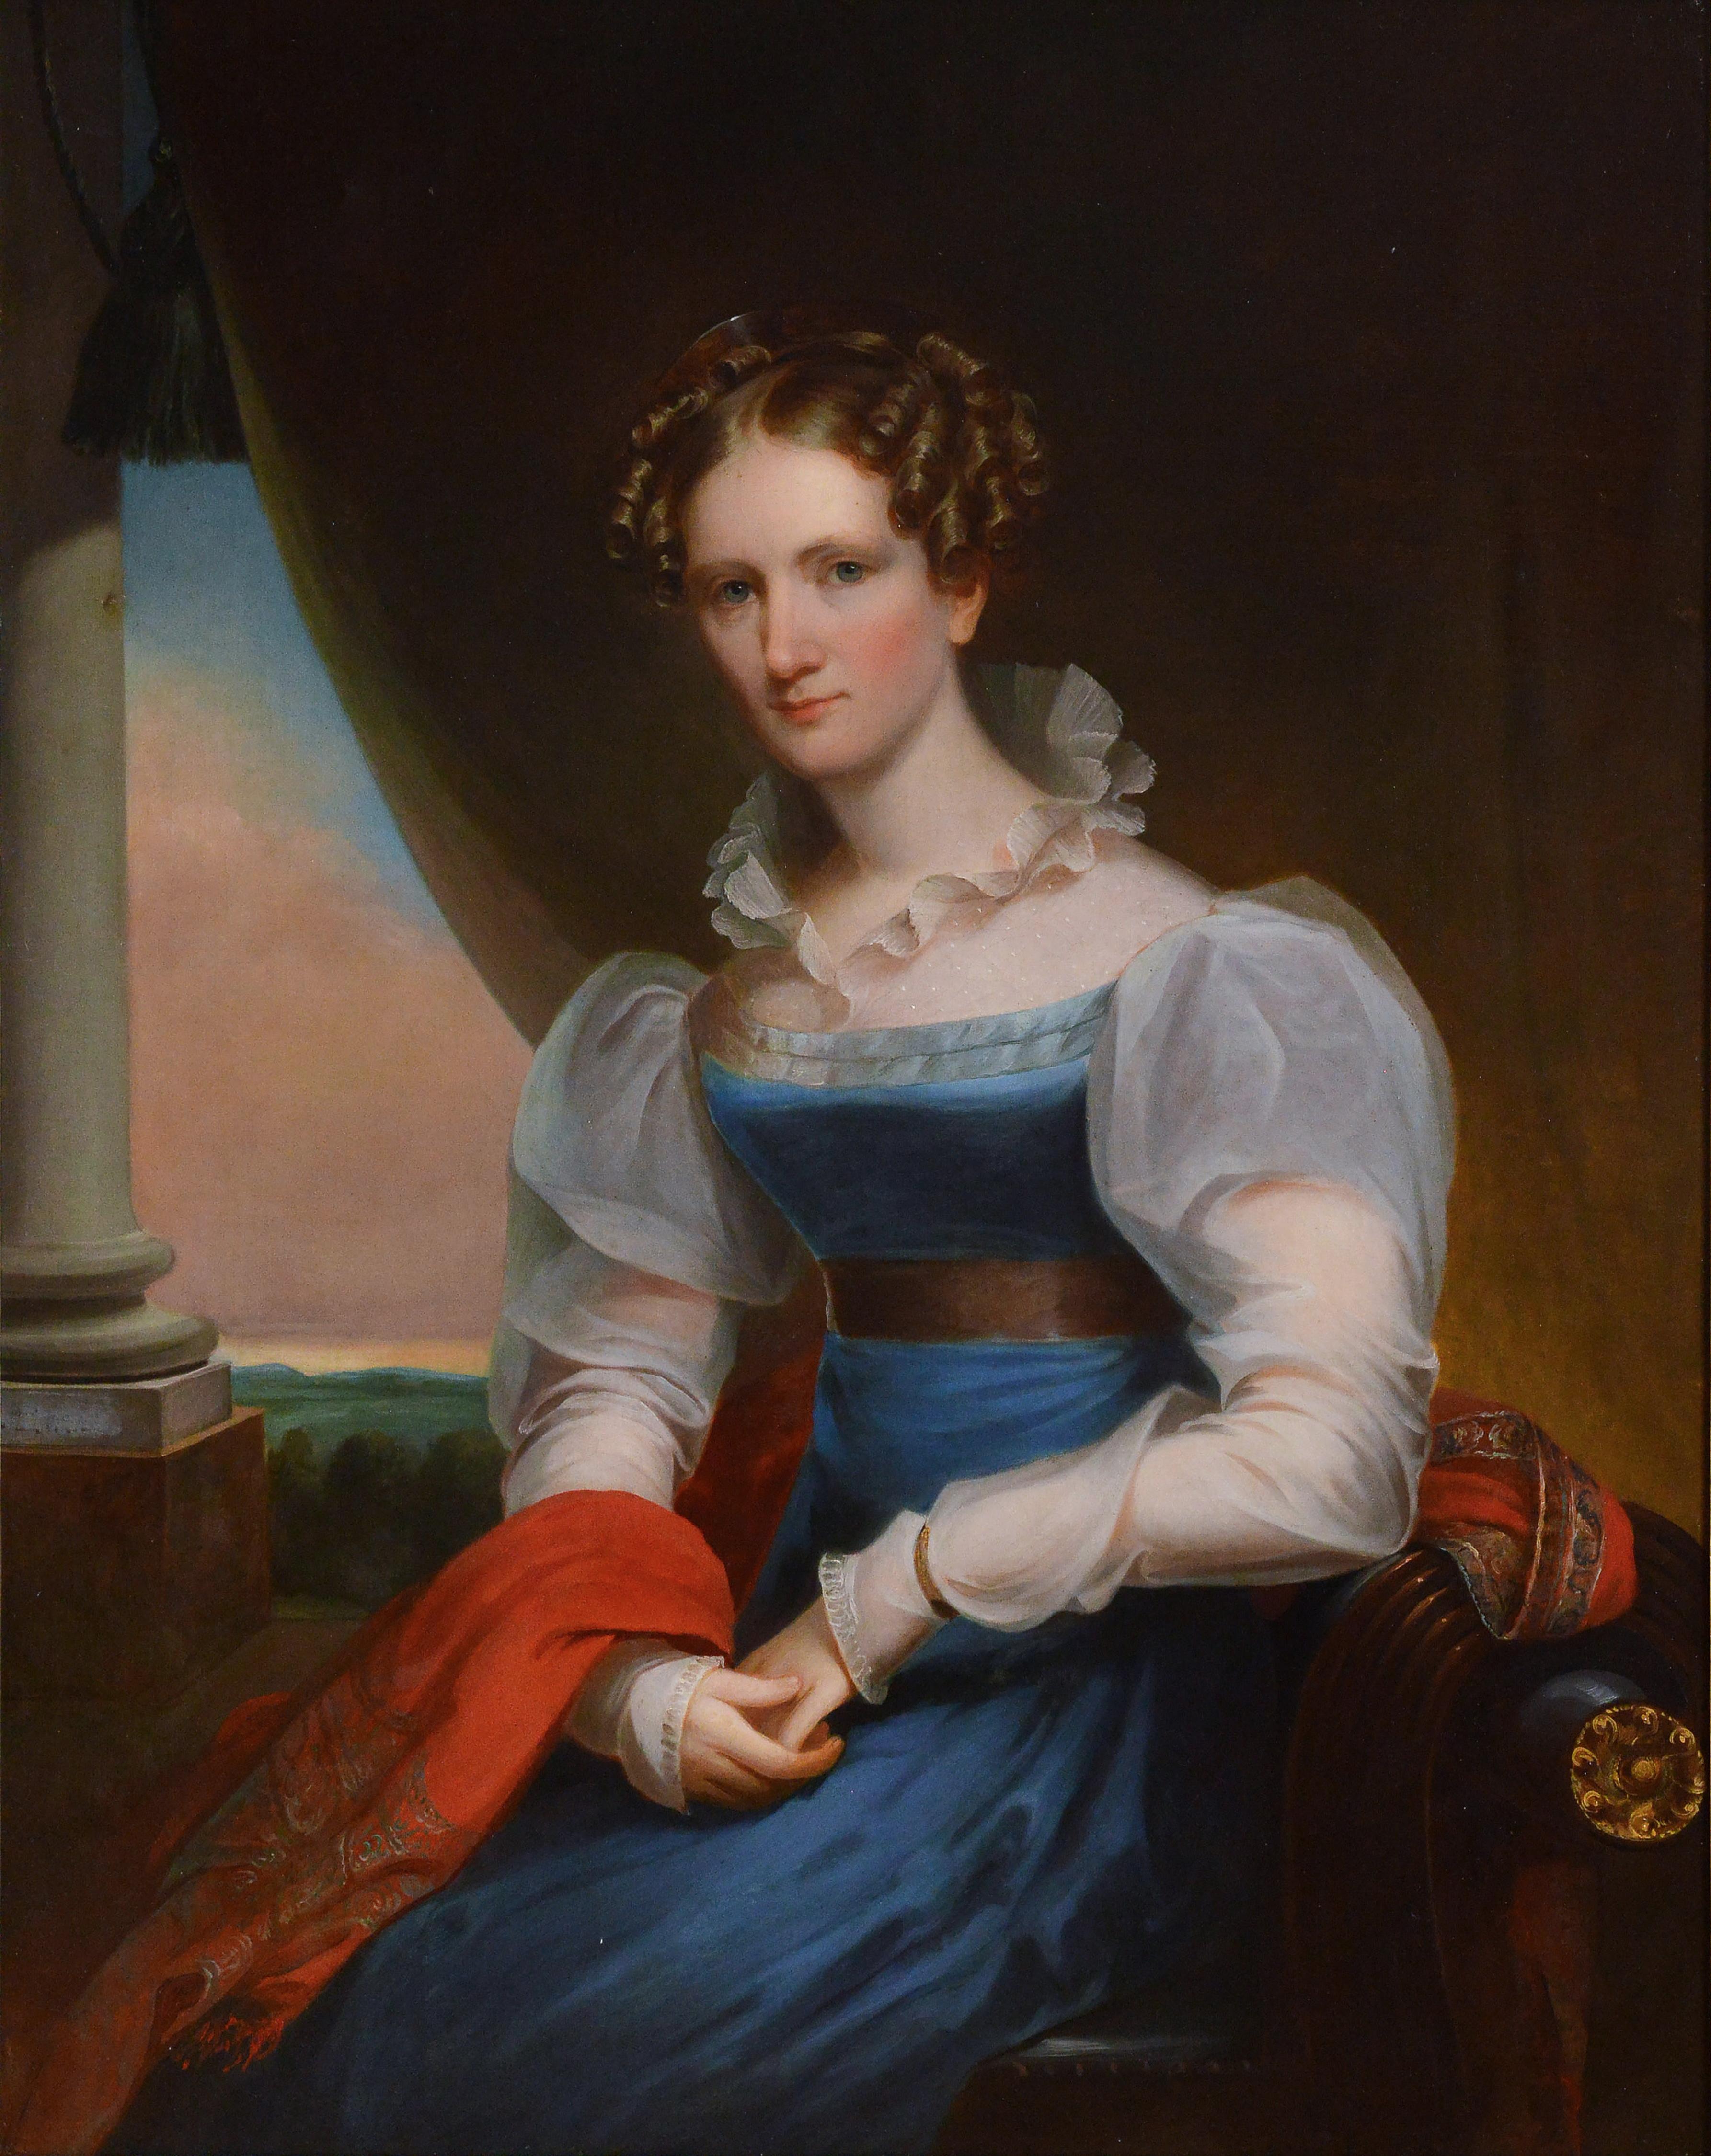 Artiste américain Portrait Femme allemande 19e siècle Huile sur toile de J. Eichholtz - Réalisme Painting par Jacob Eichholtz